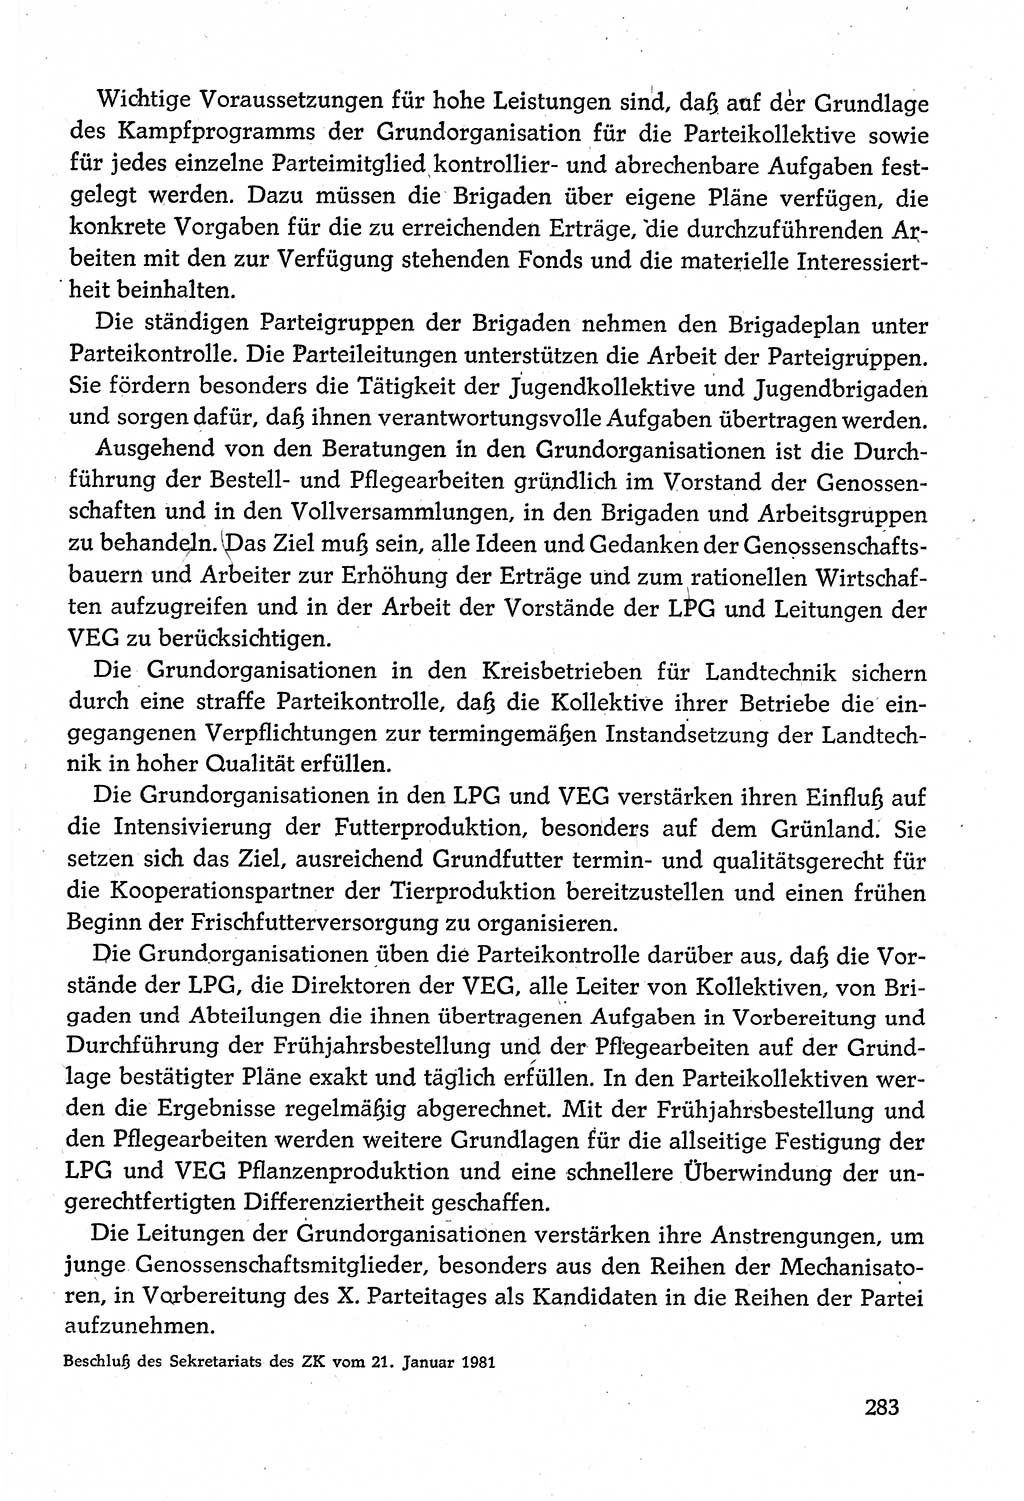 Dokumente der Sozialistischen Einheitspartei Deutschlands (SED) [Deutsche Demokratische Republik (DDR)] 1980-1981, Seite 283 (Dok. SED DDR 1980-1981, S. 283)